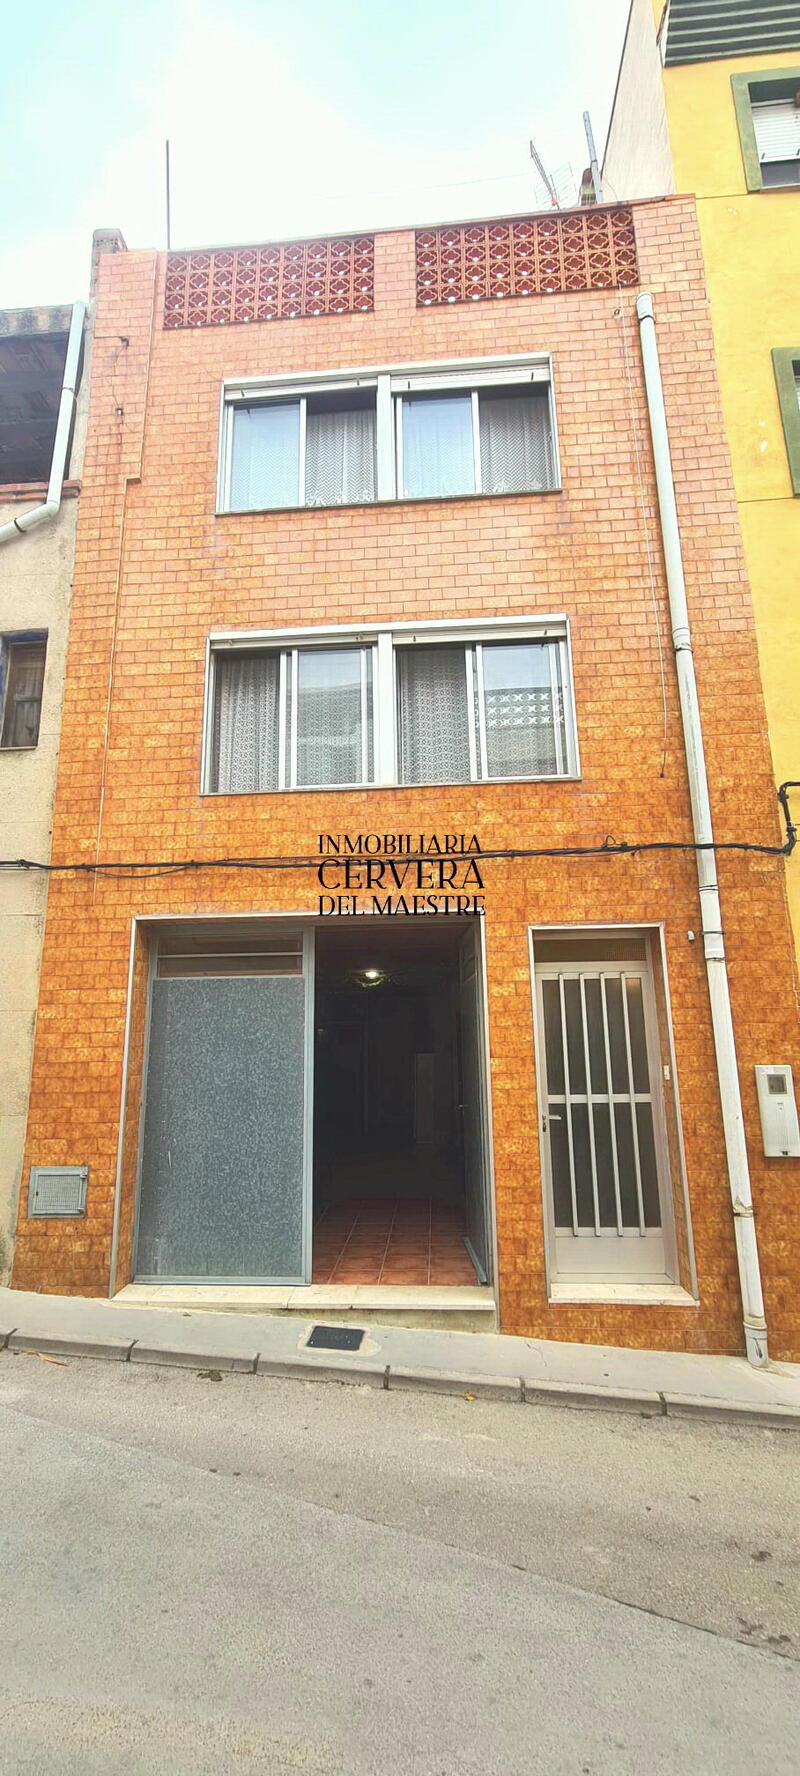 городская тюрьма продается в Cervera del Maestre, Castellón